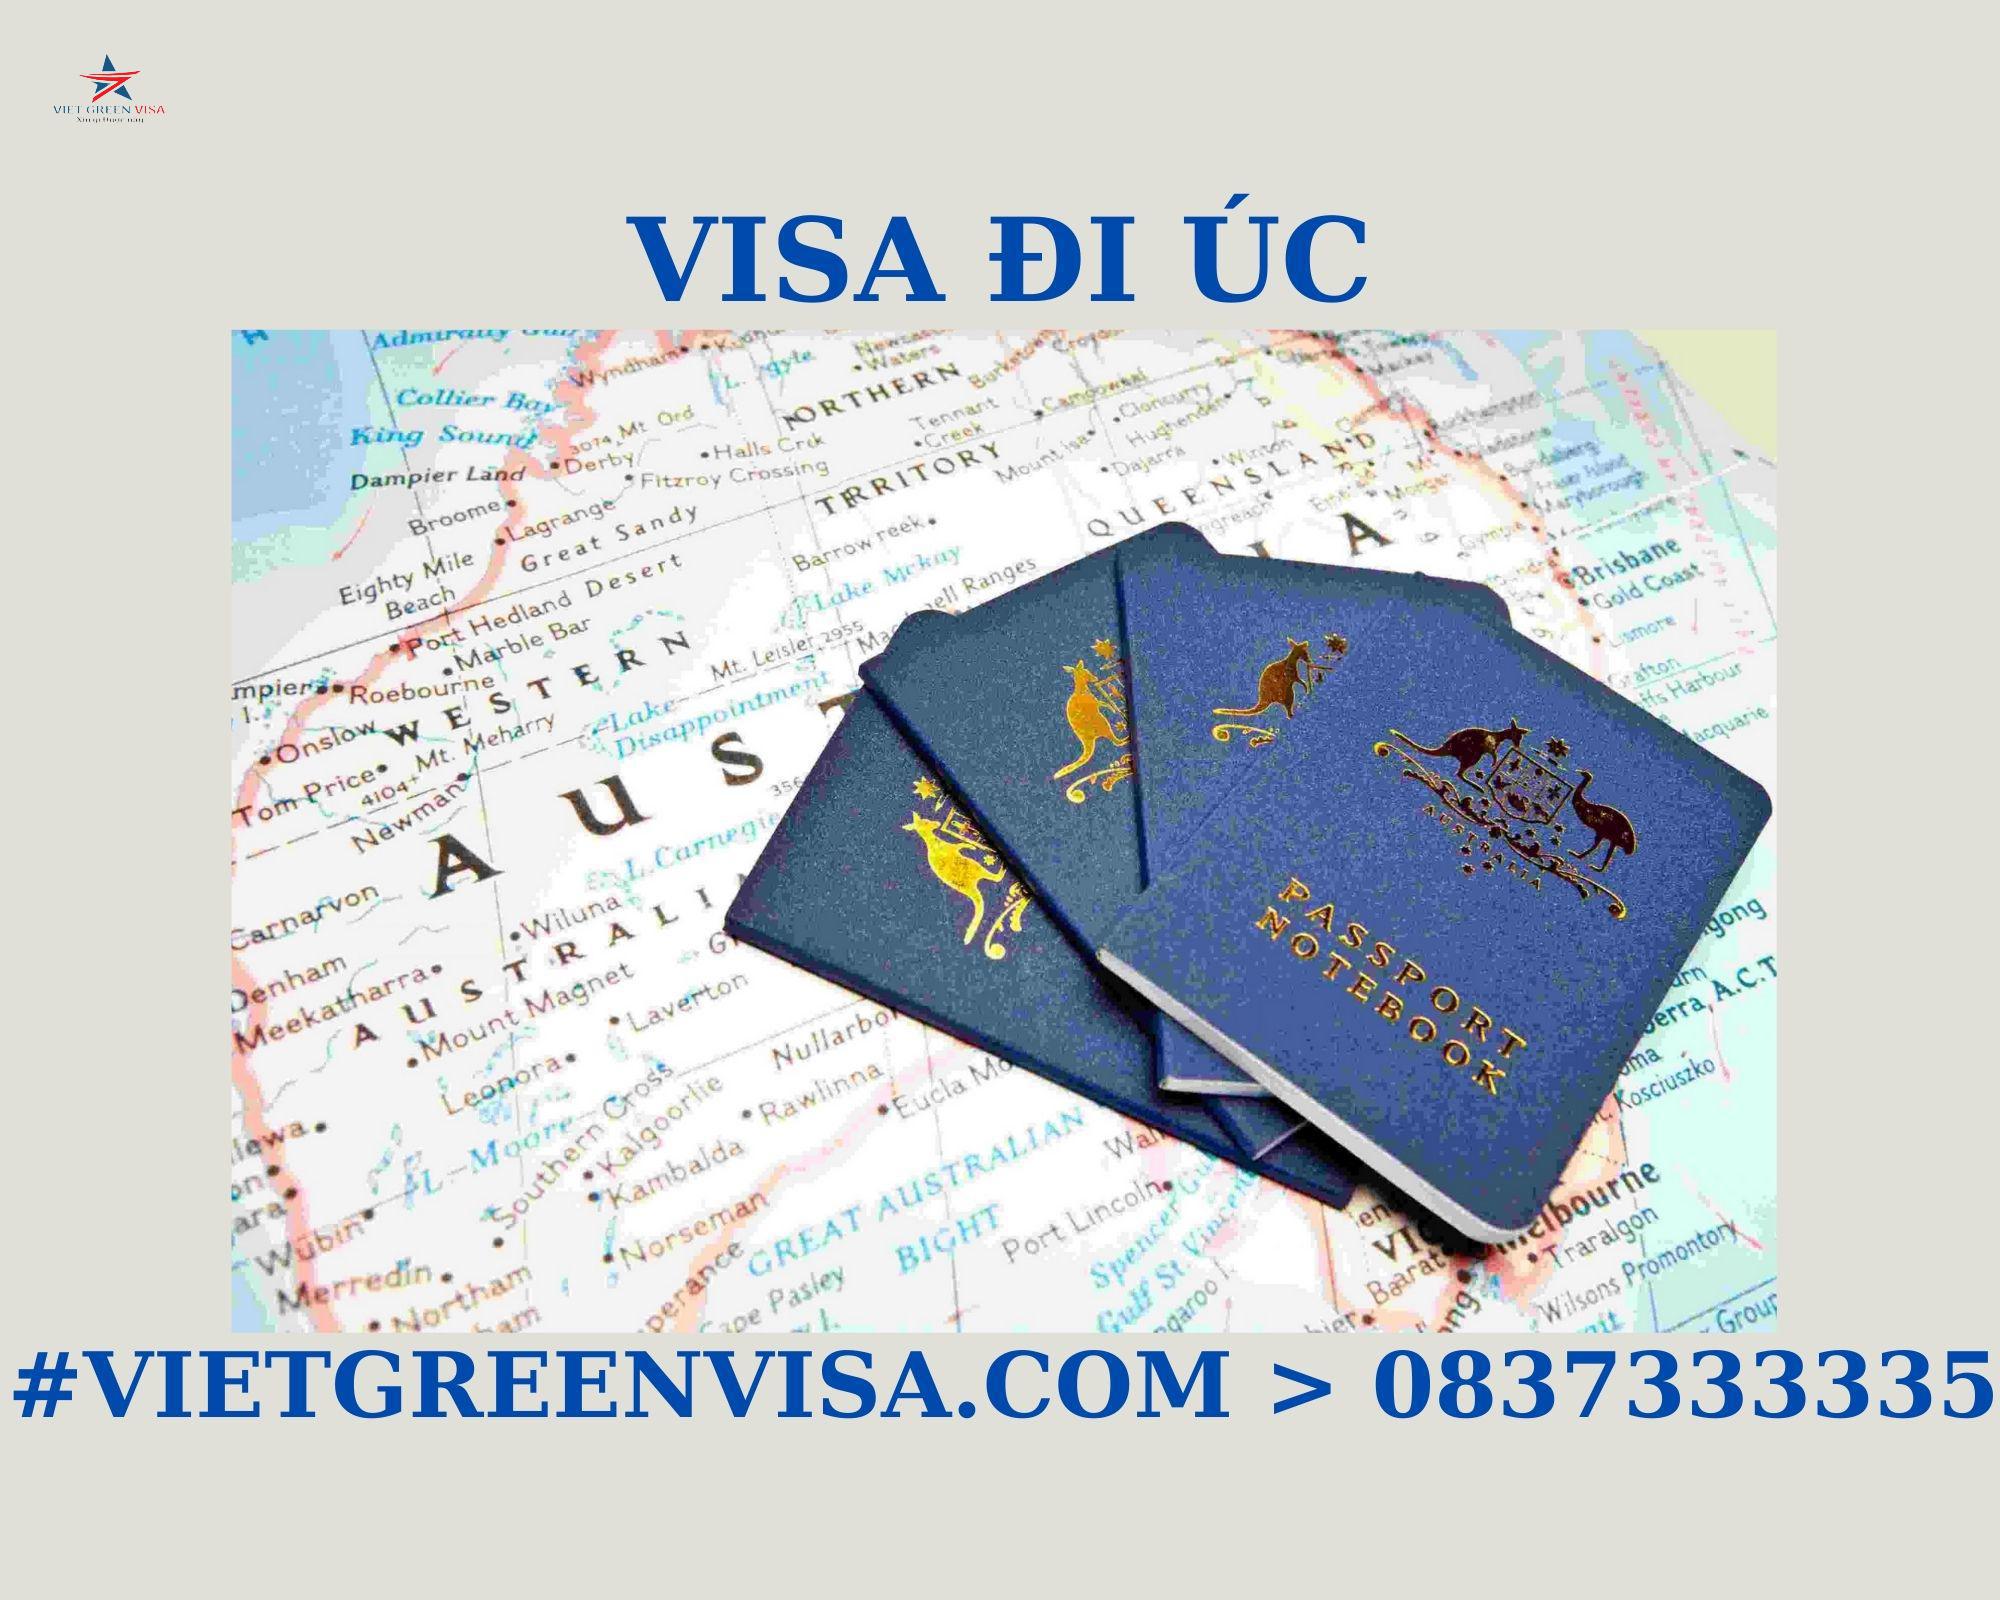 Dịch vụ xin Visa Úc công tác trọn gói uy tín